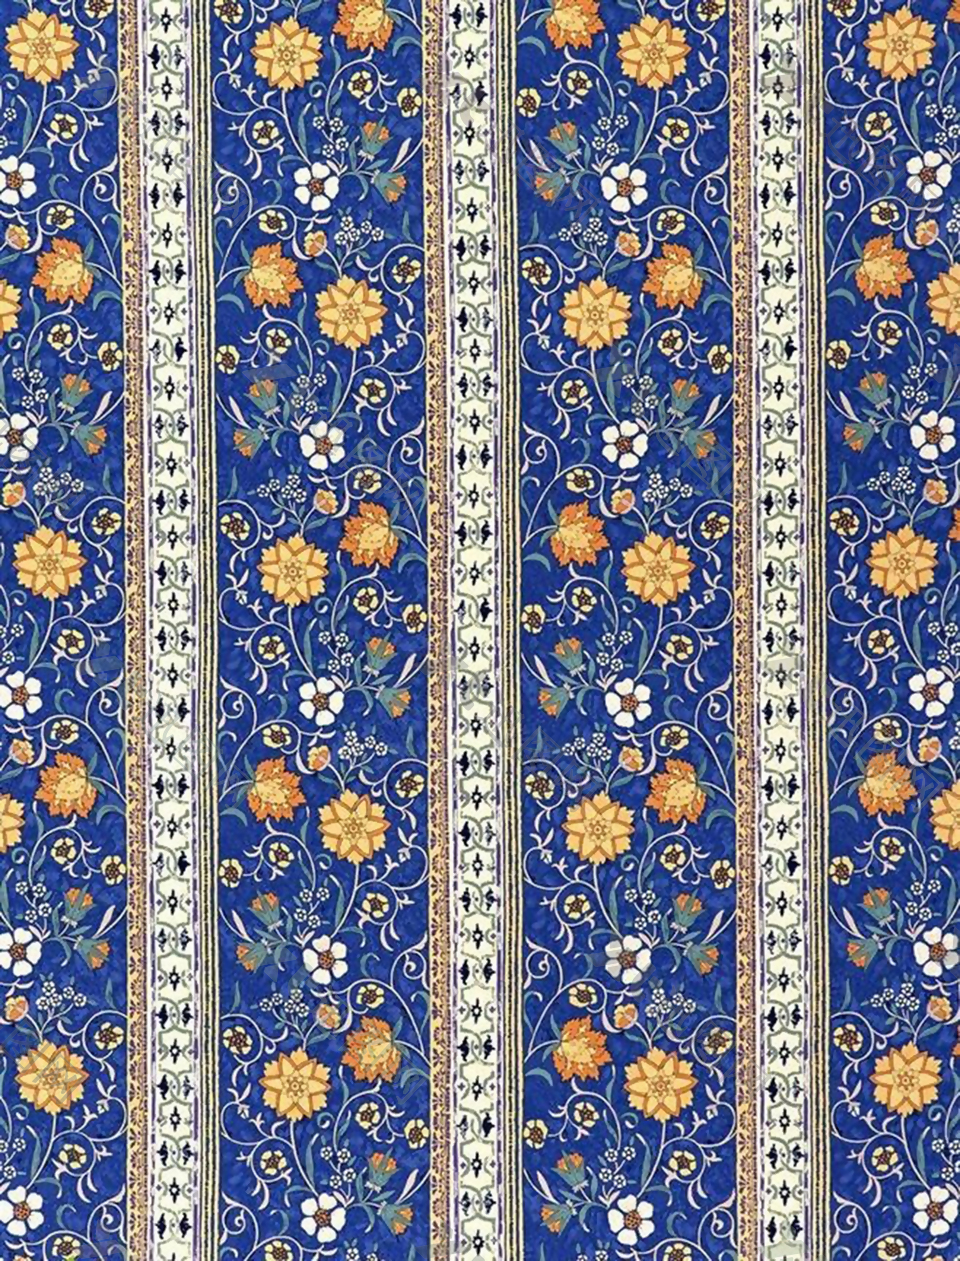 印染蓝色花卉布纹背景设计素材